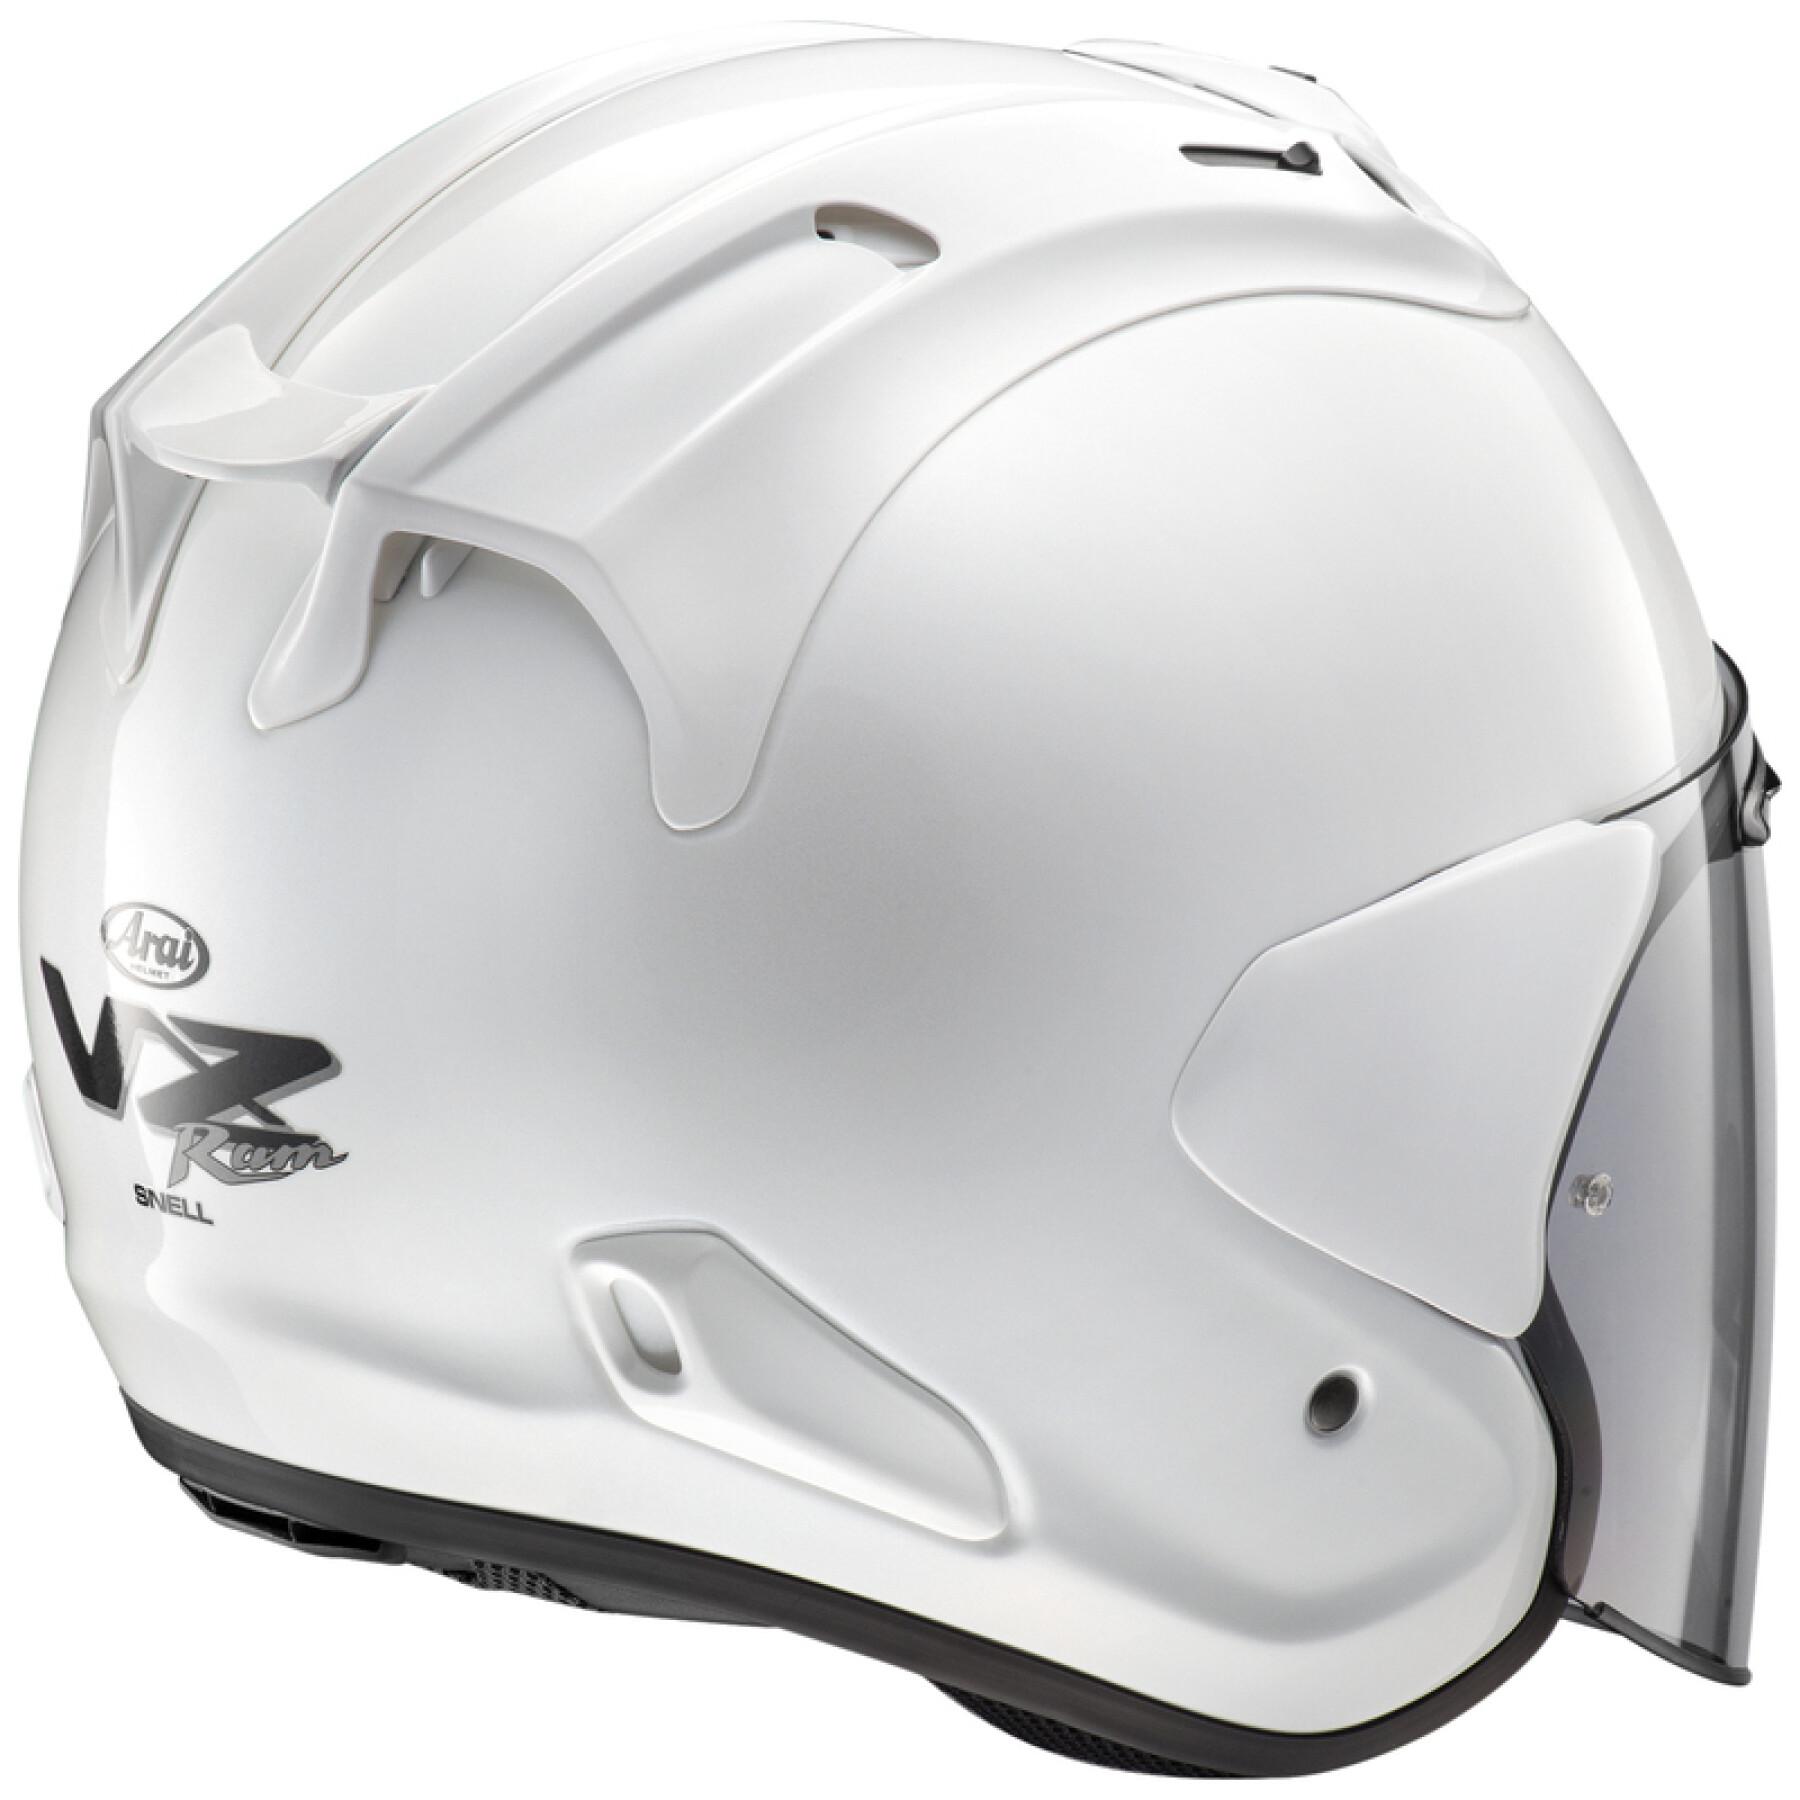 Jet motorcycle helmet Arai SZ-R VAS